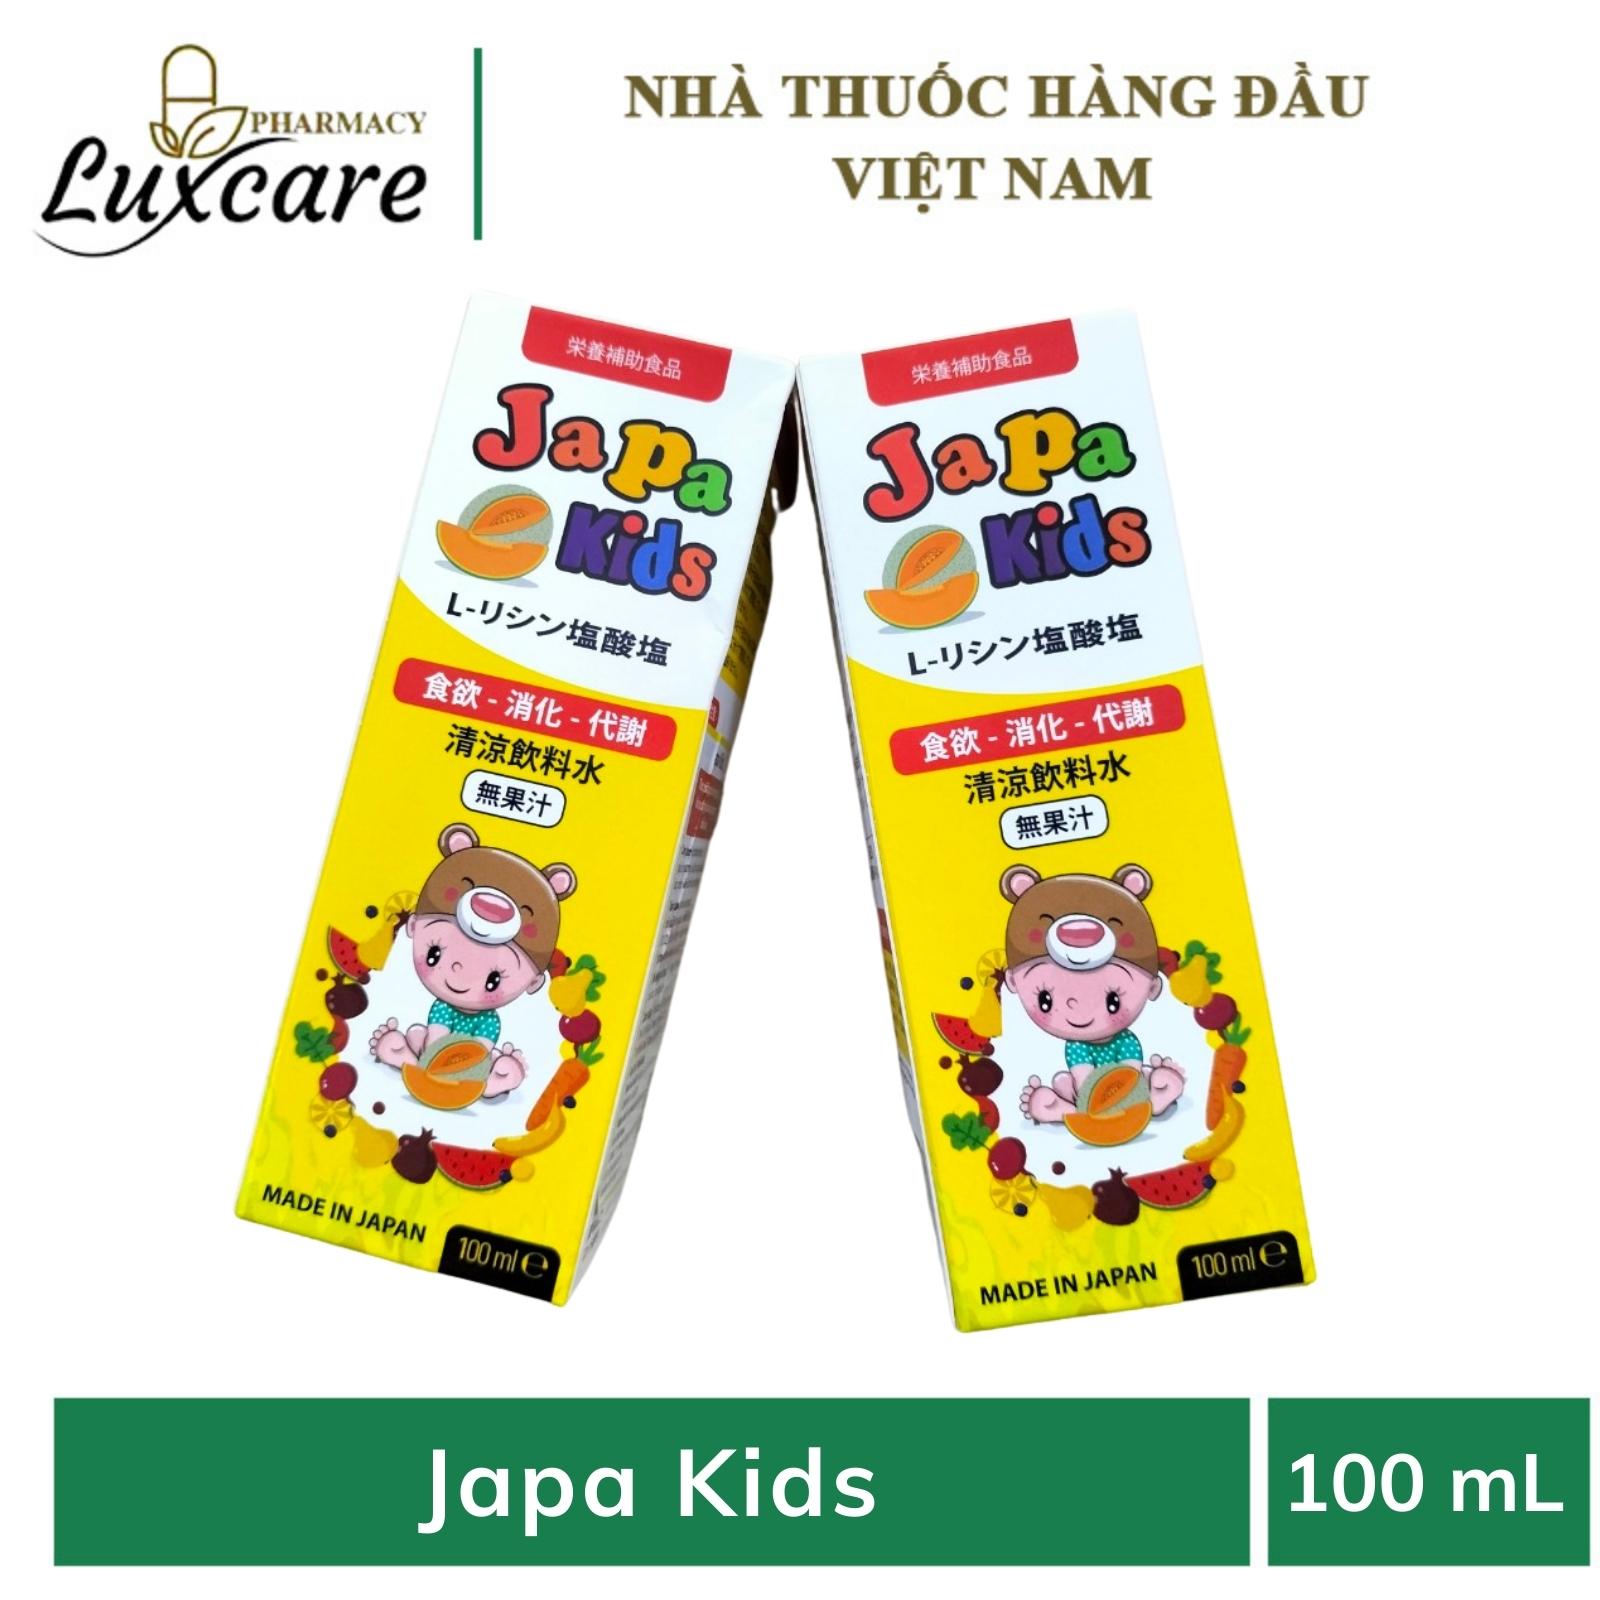 Siro Japa Kids - Hỗ trợ tăng cường tiêu hóa, giúp ăn ngon miệng